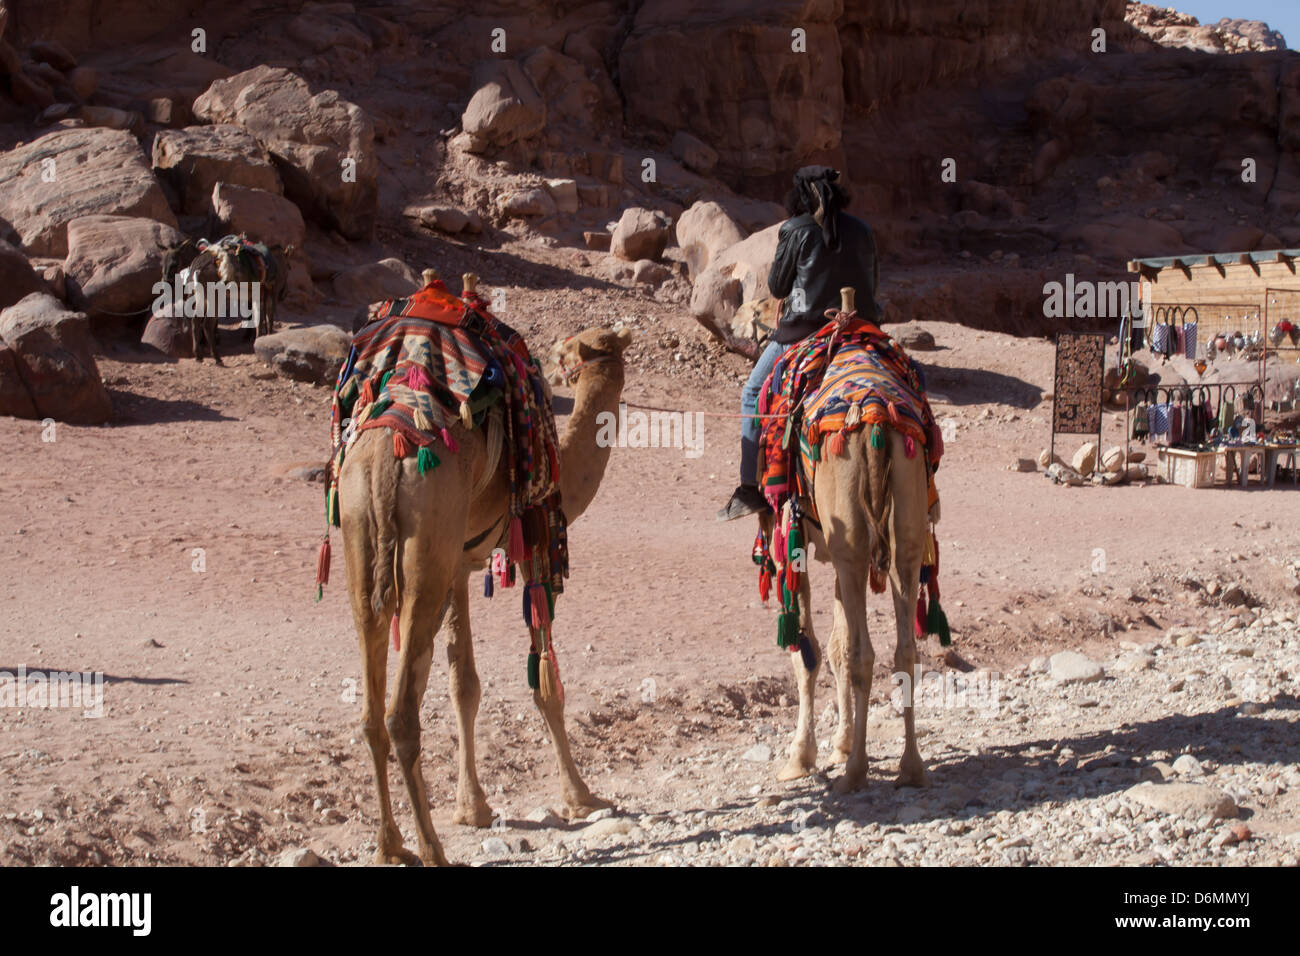 Les chameaux et guide pour les touristes de la cité perdue de Petra, Jordanie, une aventure de voyage Banque D'Images